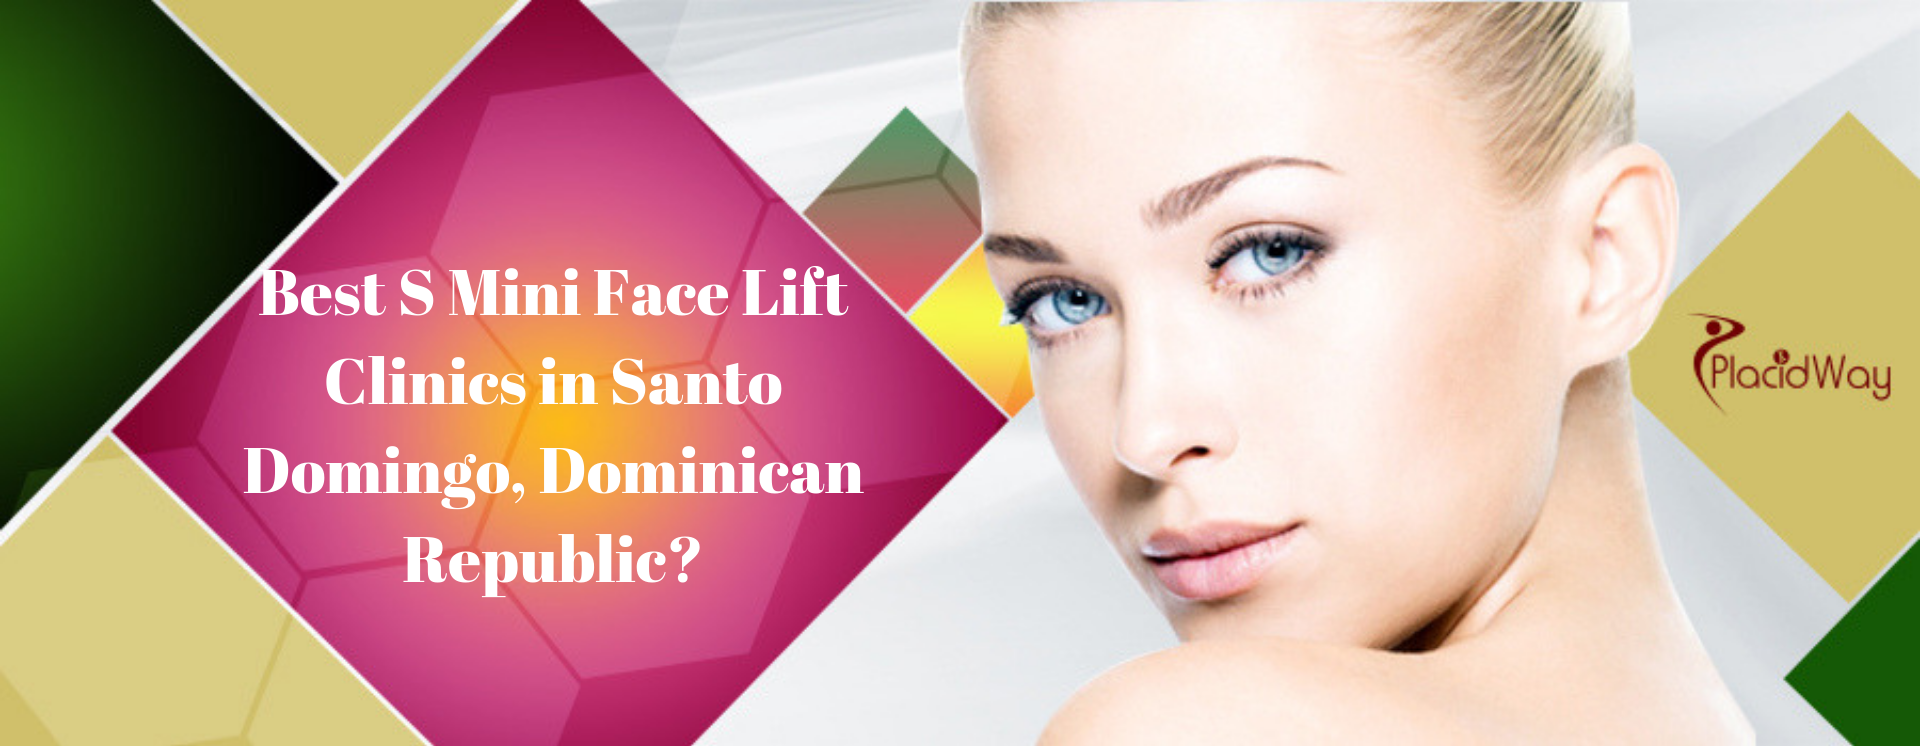 Best S Mini Face Lift clinics in Santo Domingo, Dominican Republic